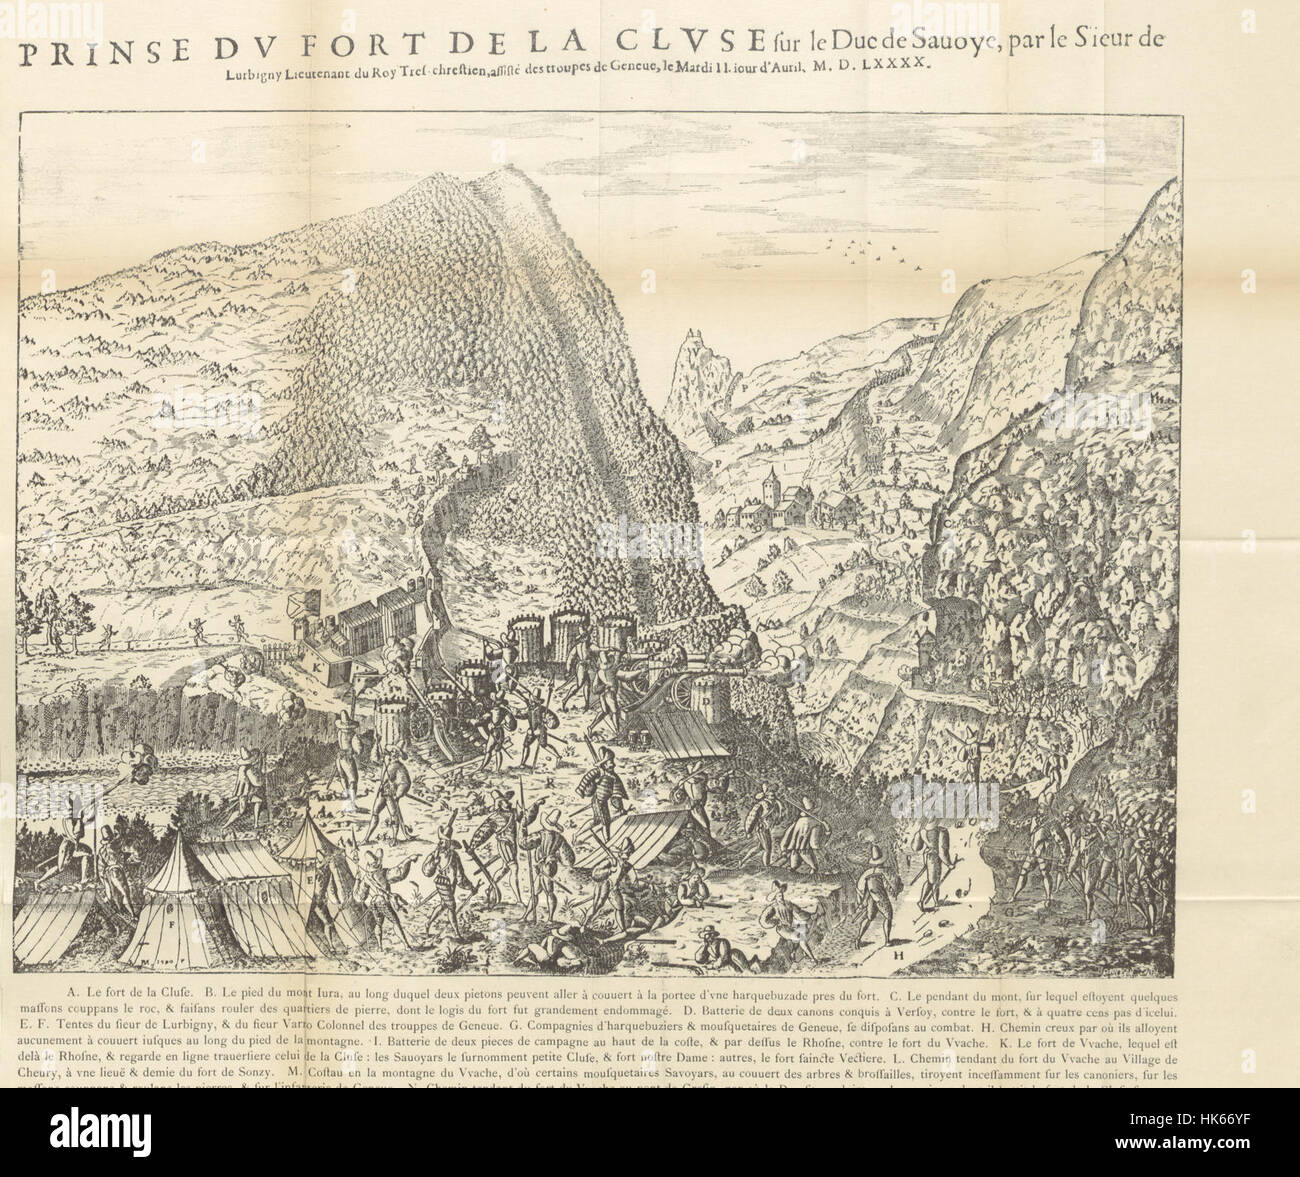 La Guerre du pays de Gex et l'occupation genevoise 1589-1601 Image taken from page 229 of 'La Gu Stock Photo